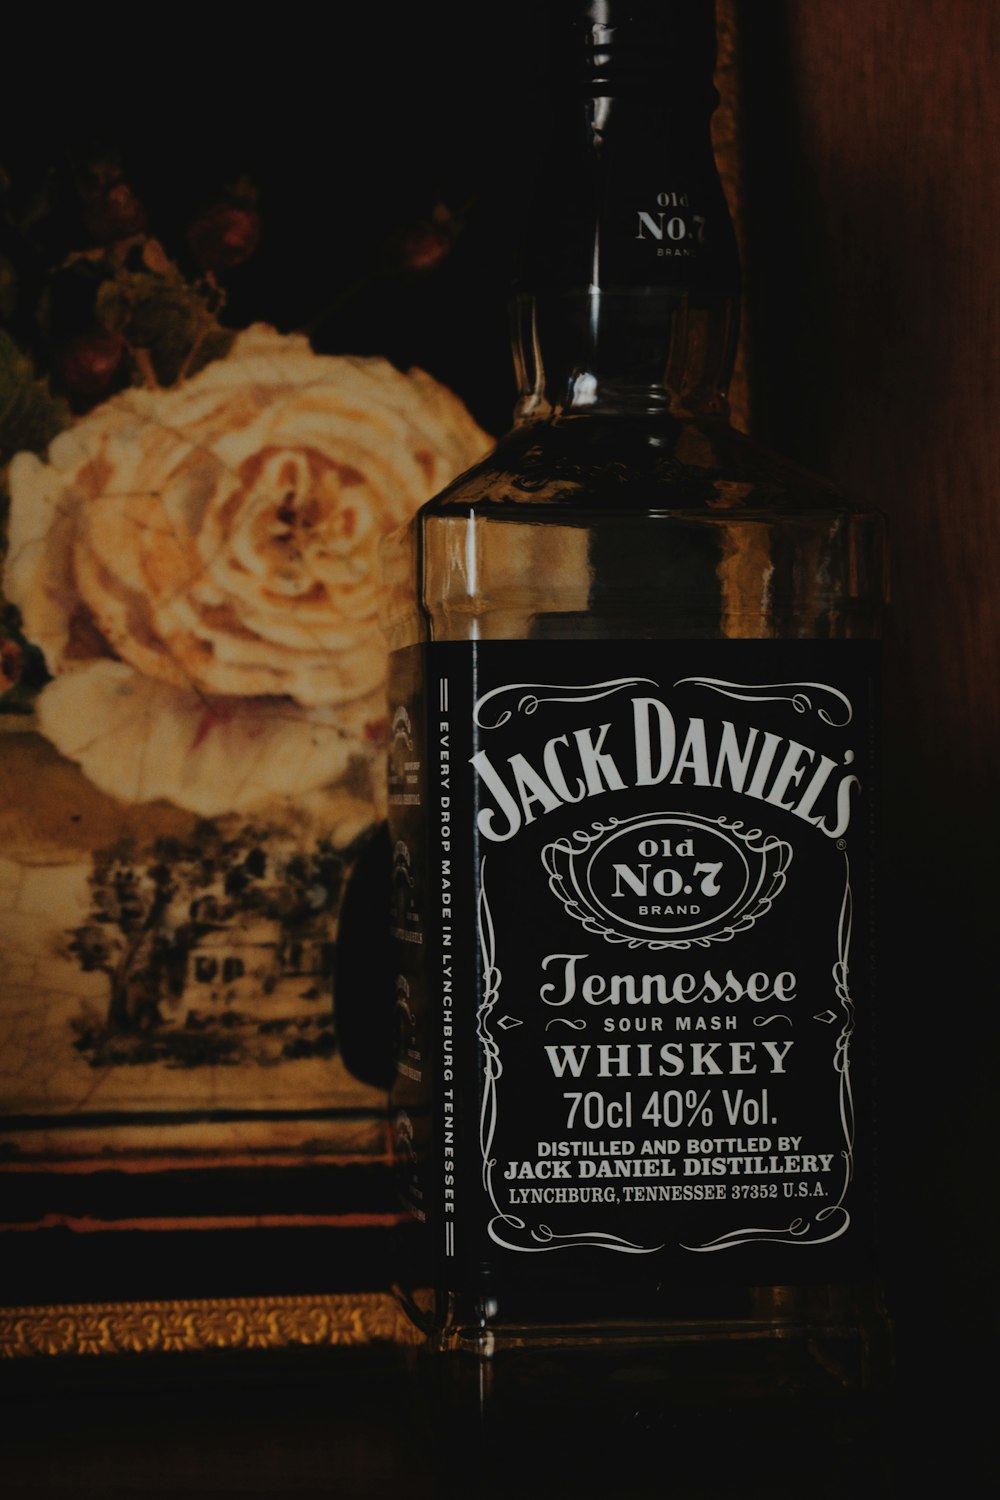 Jack Daniels bottle